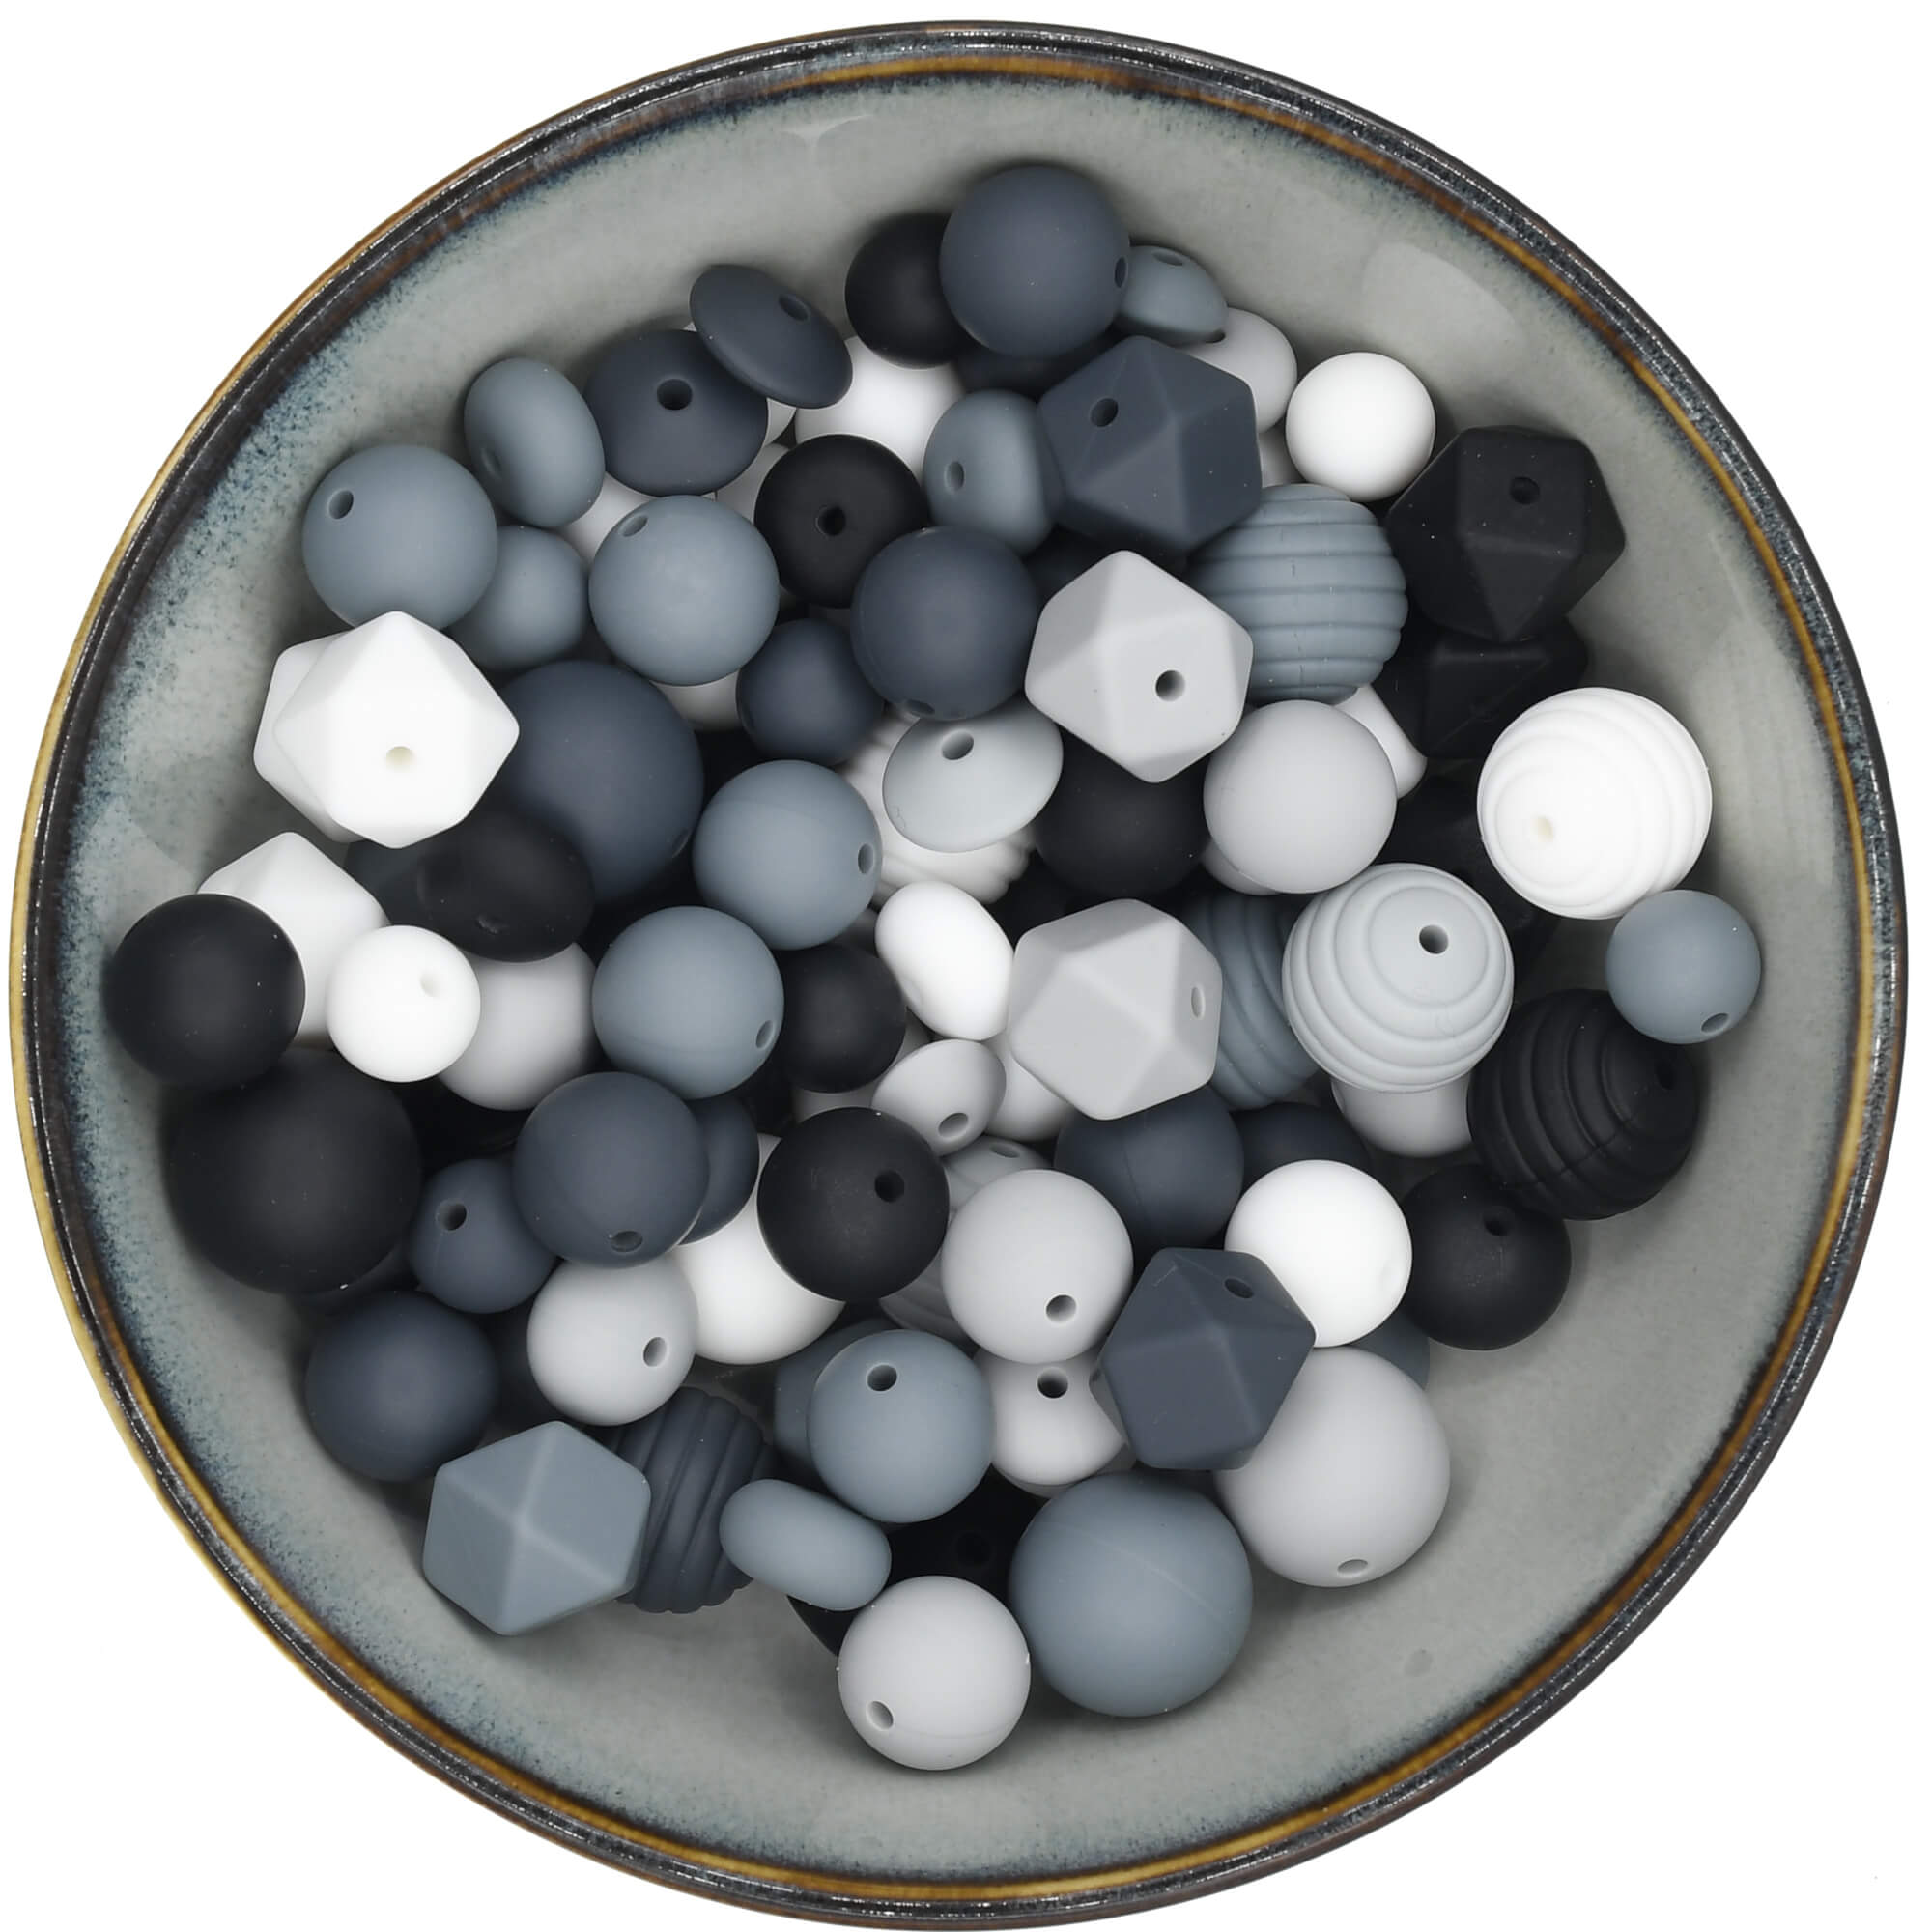 Siliconen kralenmix van 200 gram in zwart, grijstinten en wit.